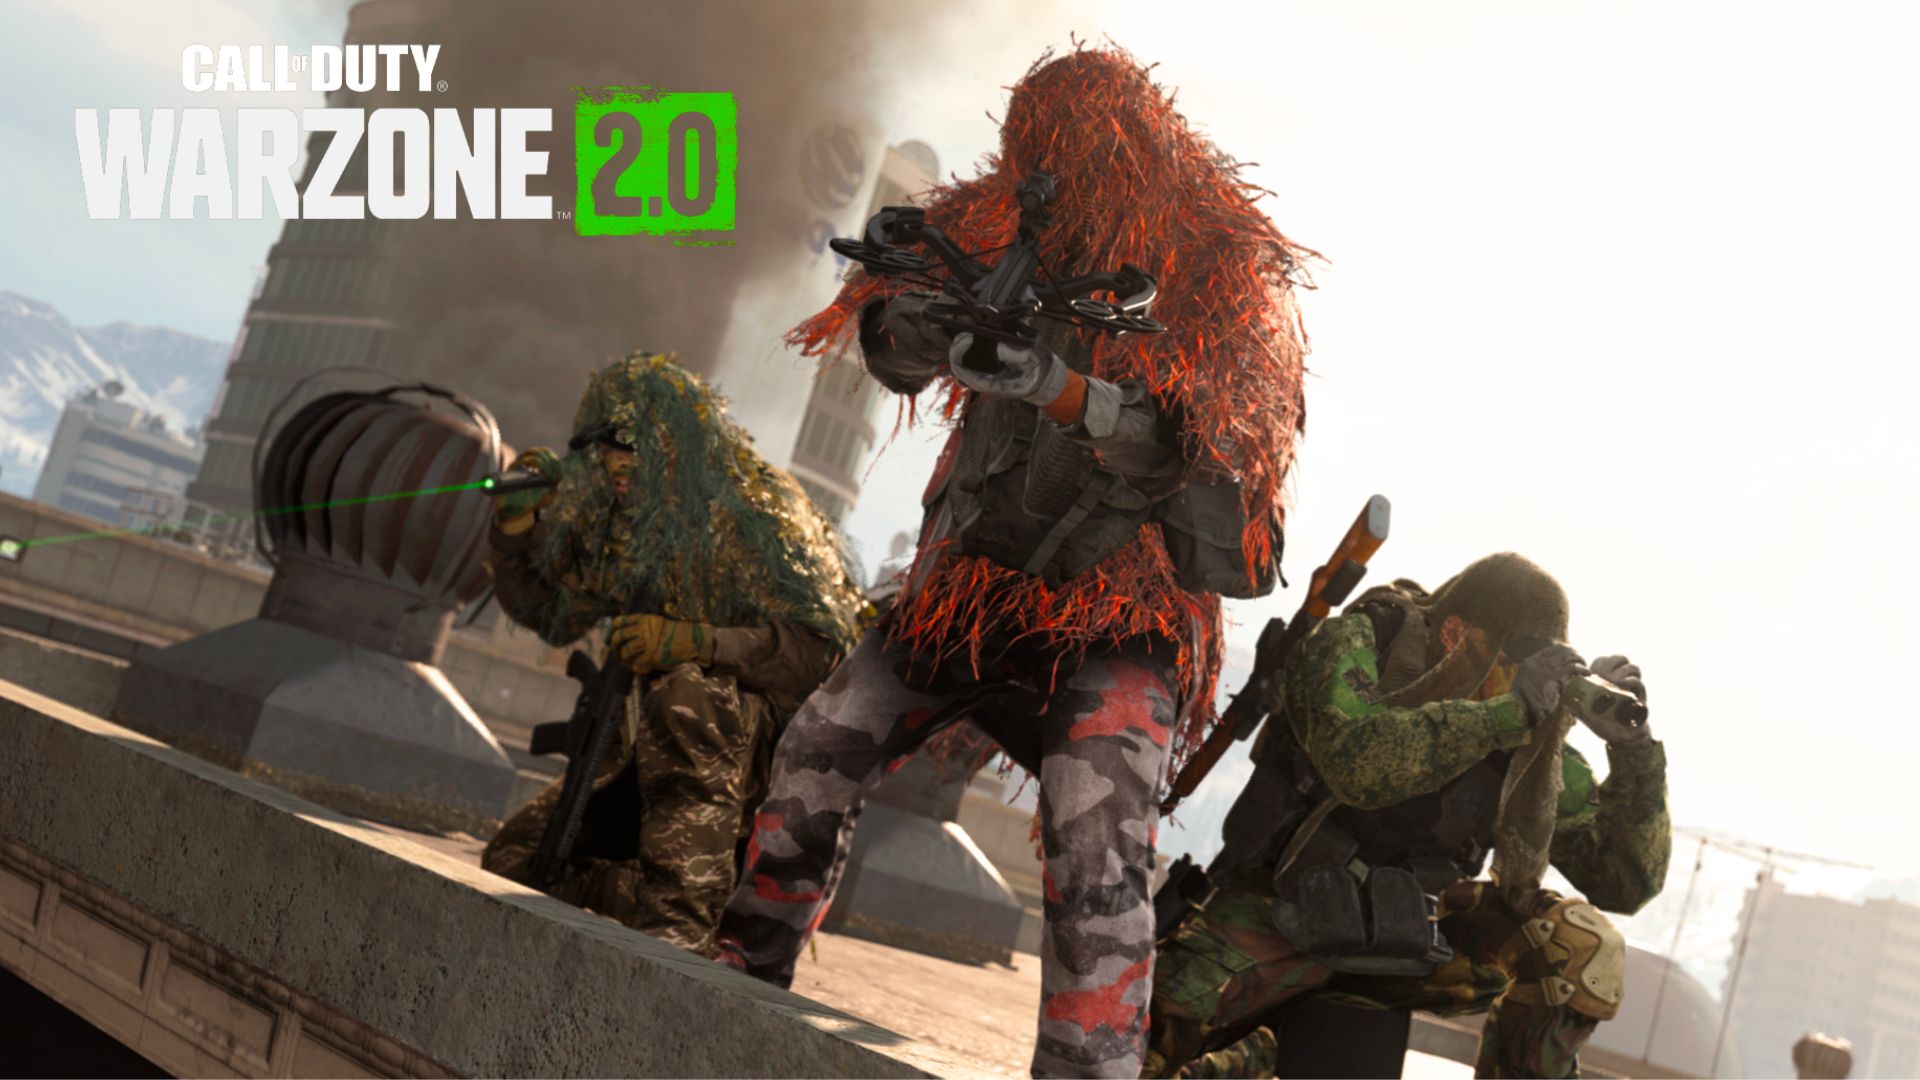 Gracze Warzone 2 wyrażają zaniepokojenie spadkiem liczby aktywnych graczy na Steamie